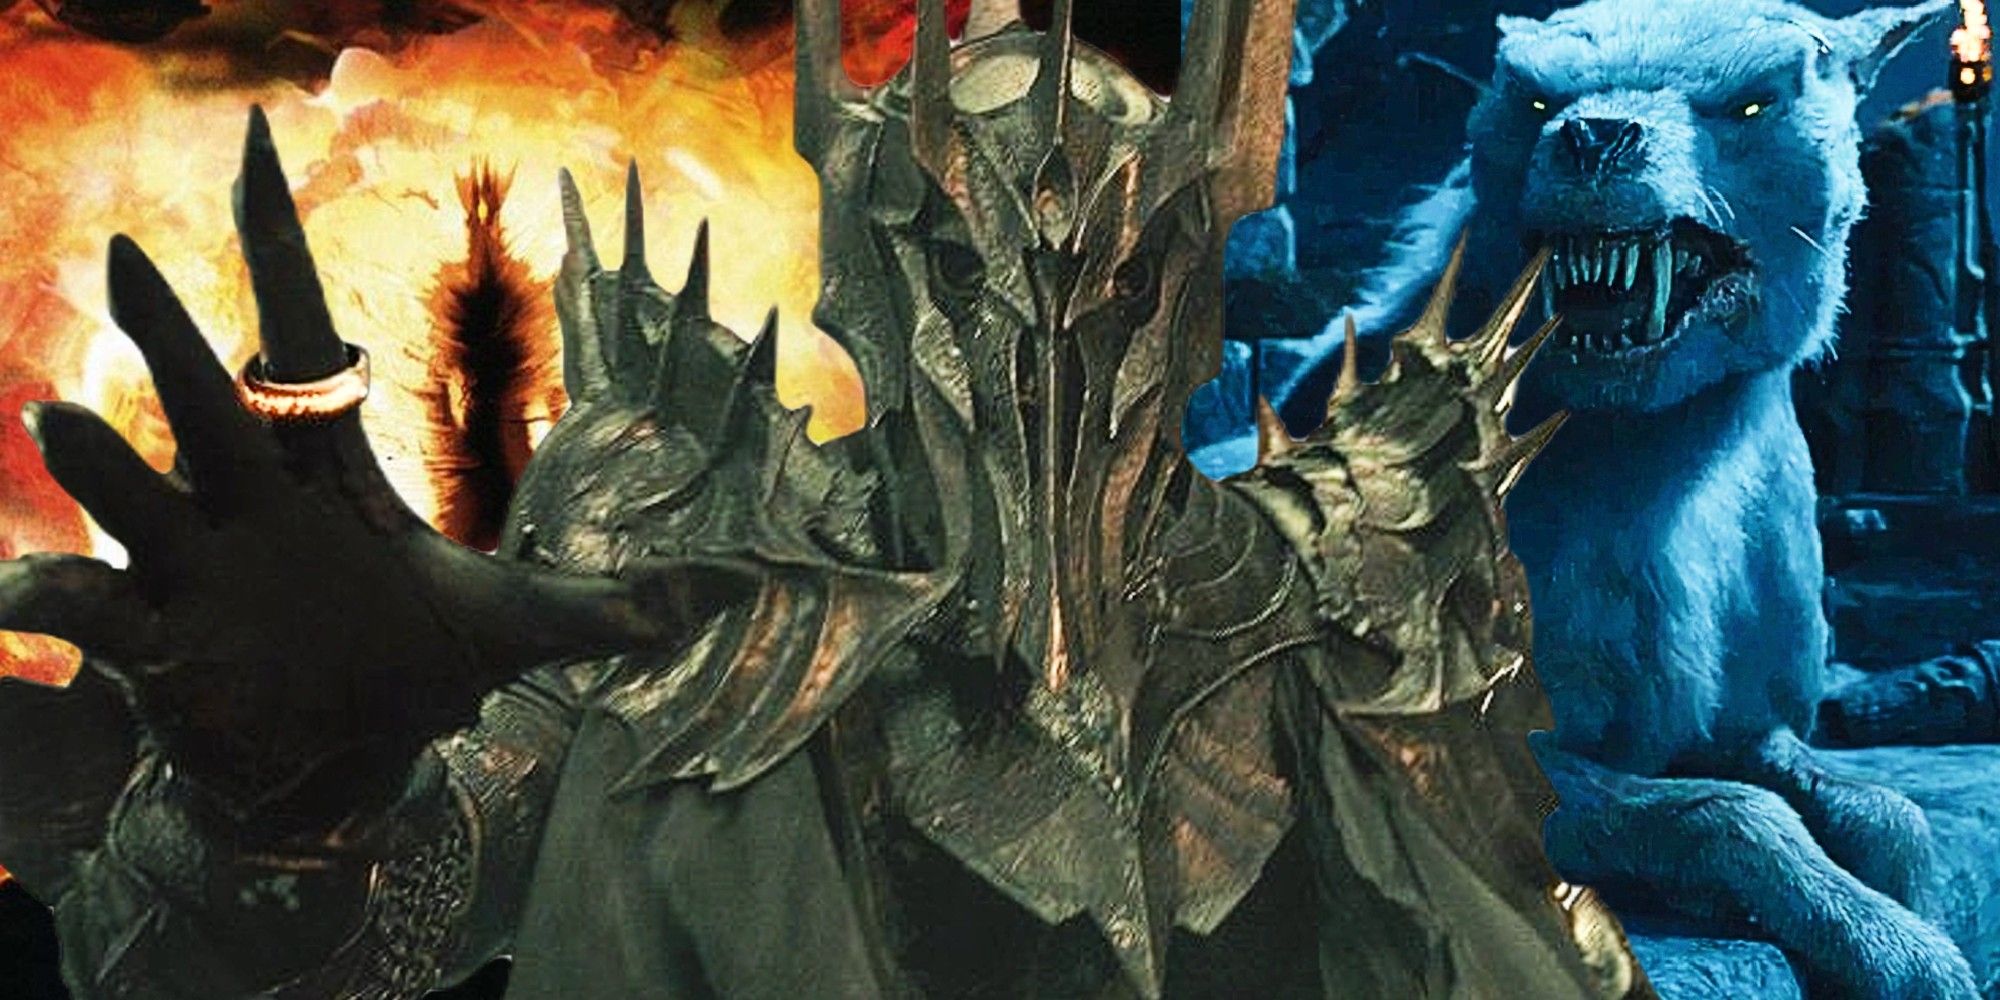 Nicknames for Sauron: S A U R O N, Saนr๏n༼℘ⷬℜⷢℴⷪ༽, ♆ S A U R O N,  ๖ۣۜSauroภ, MR SAURON